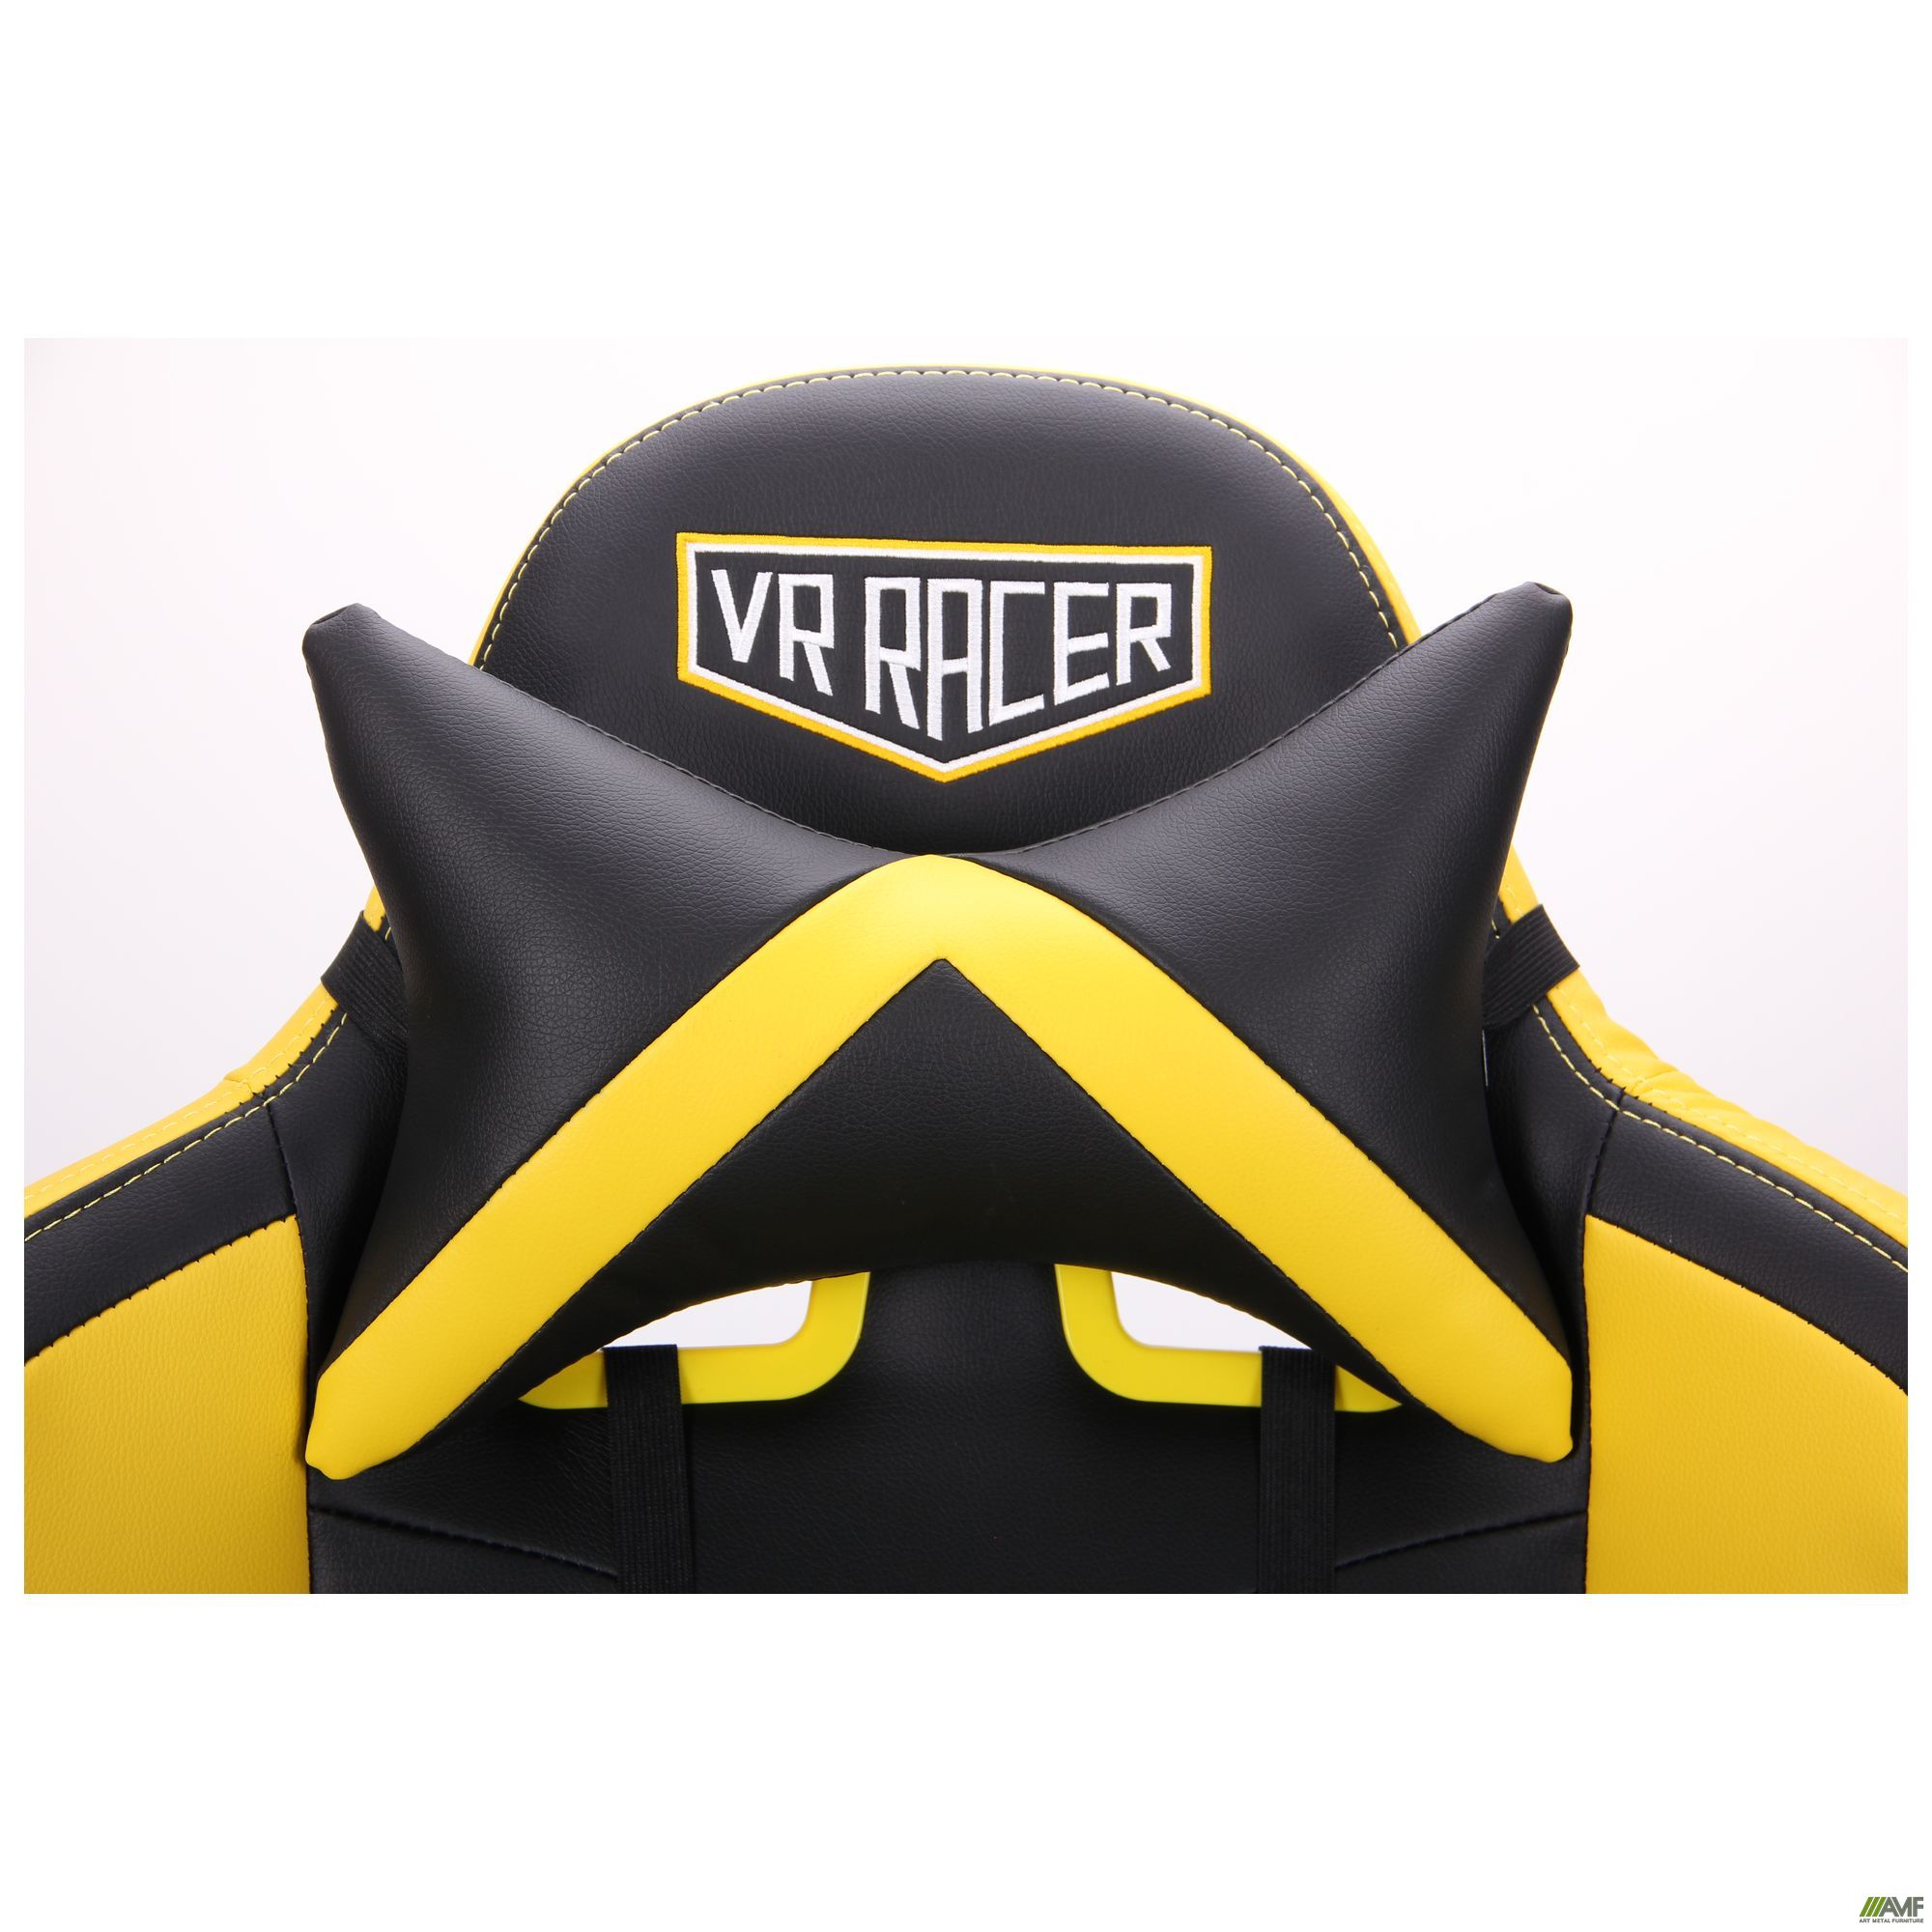 Фото 9 - Кресло VR Racer BattleBee черный/желтый 